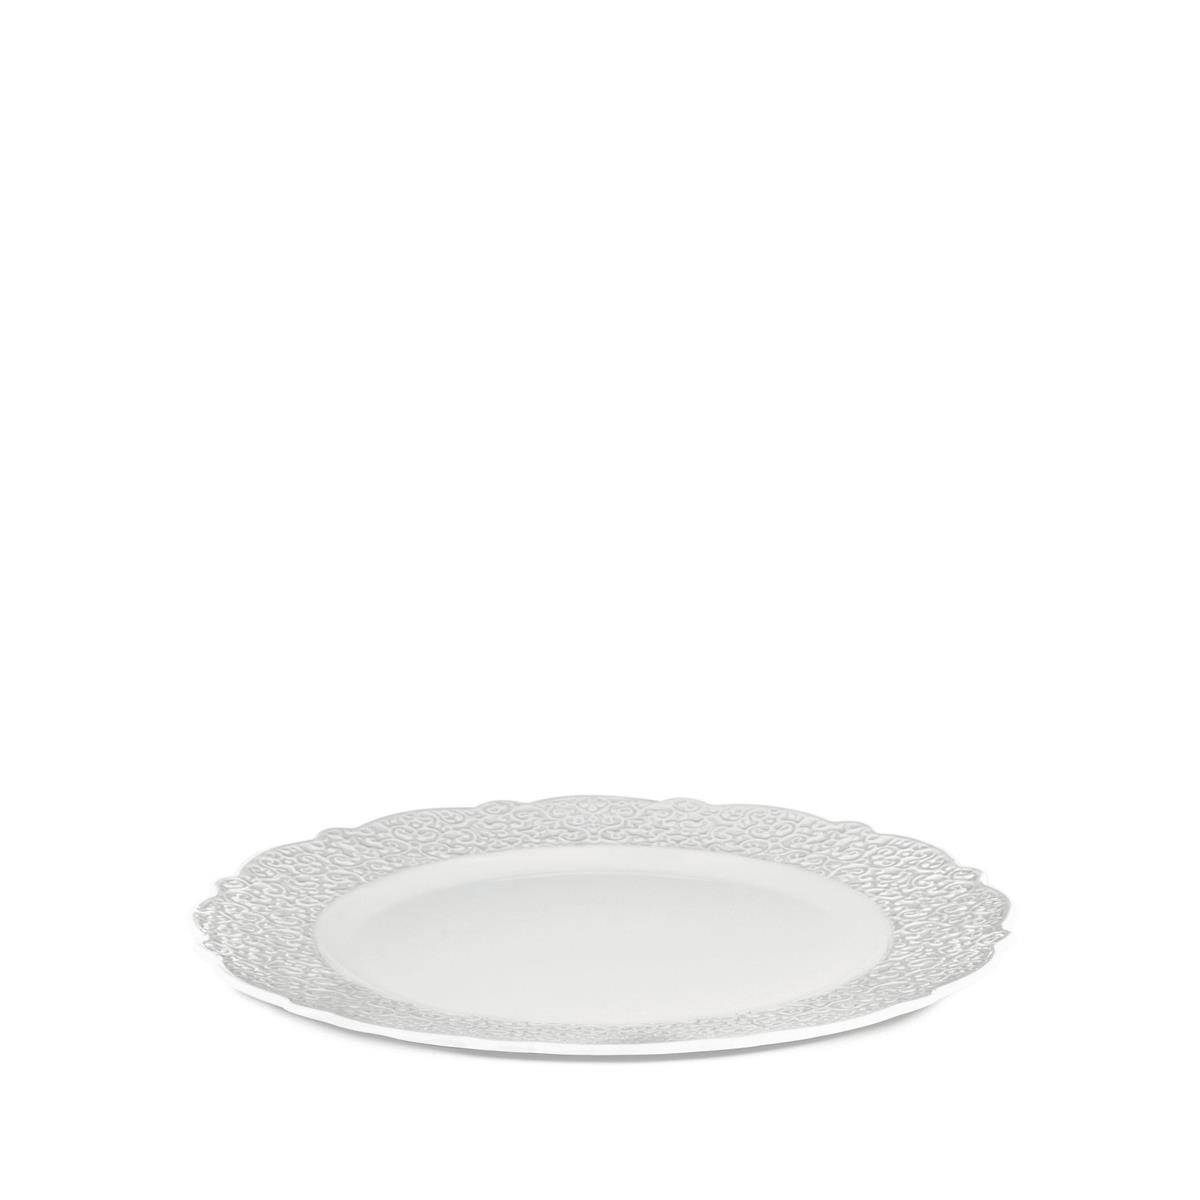 photo dressed piatto da portata in porcellana bianca con decoro a rilievo